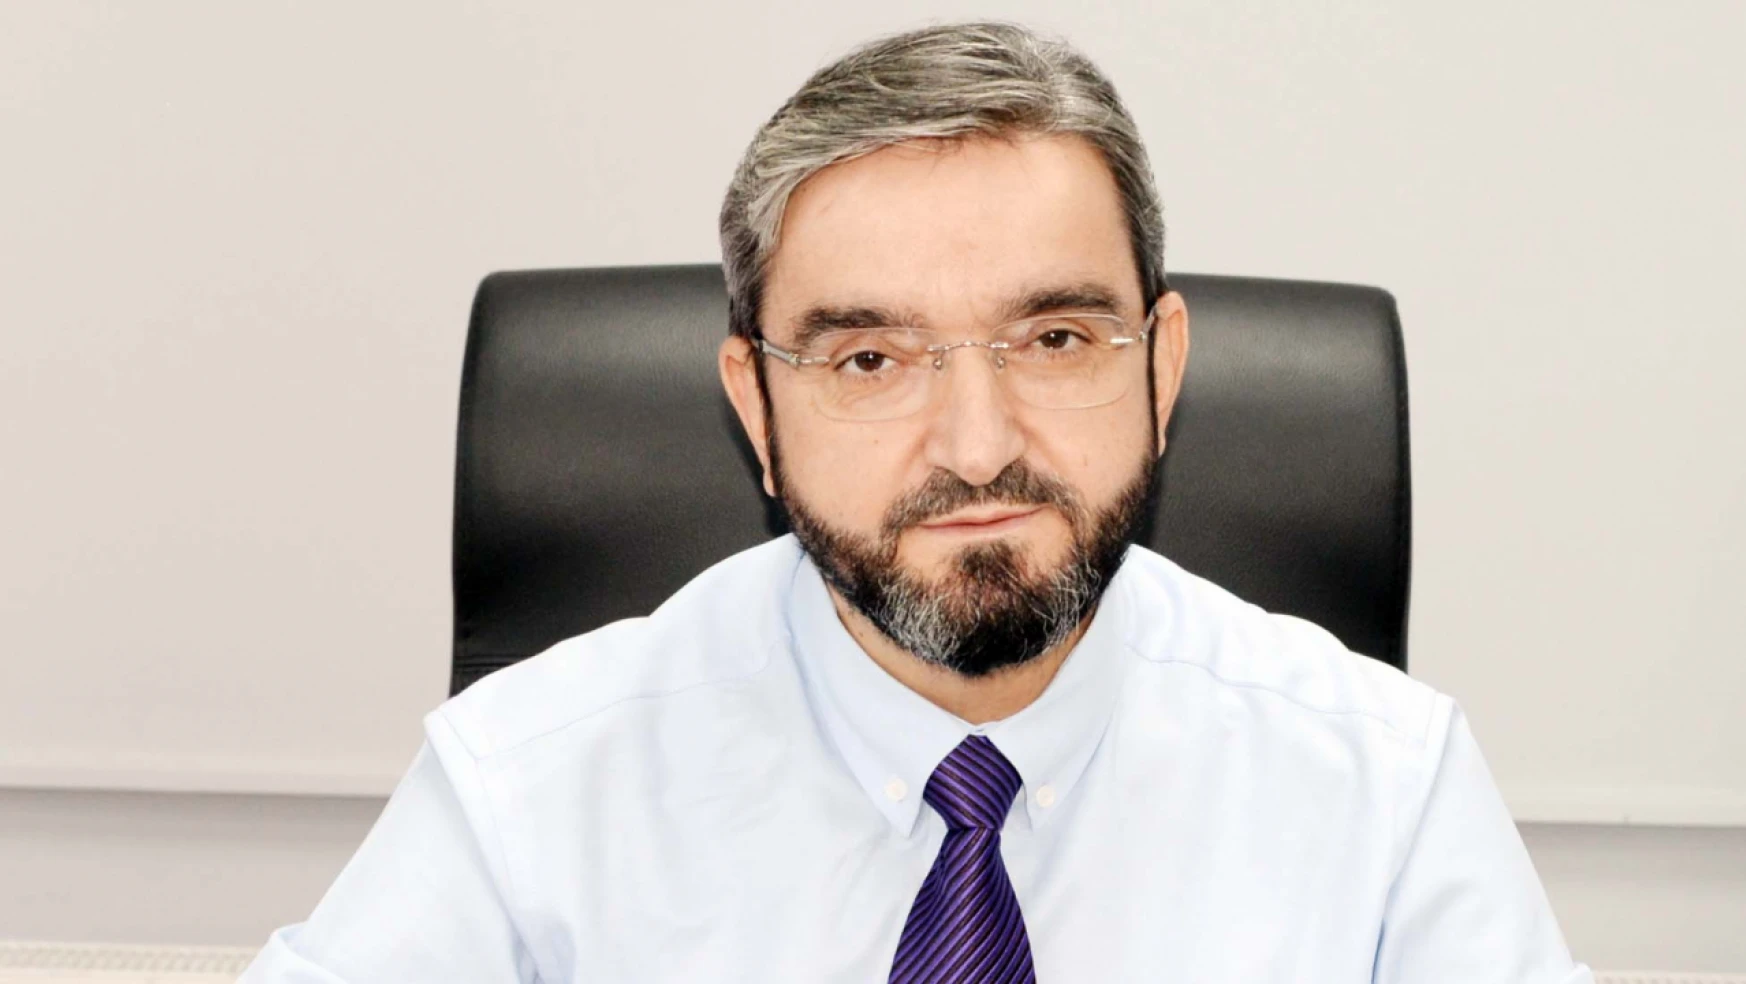 Deva Partisi Konya İl Başkanı Karaca'dan, Fahrettin Altun'a çağrı